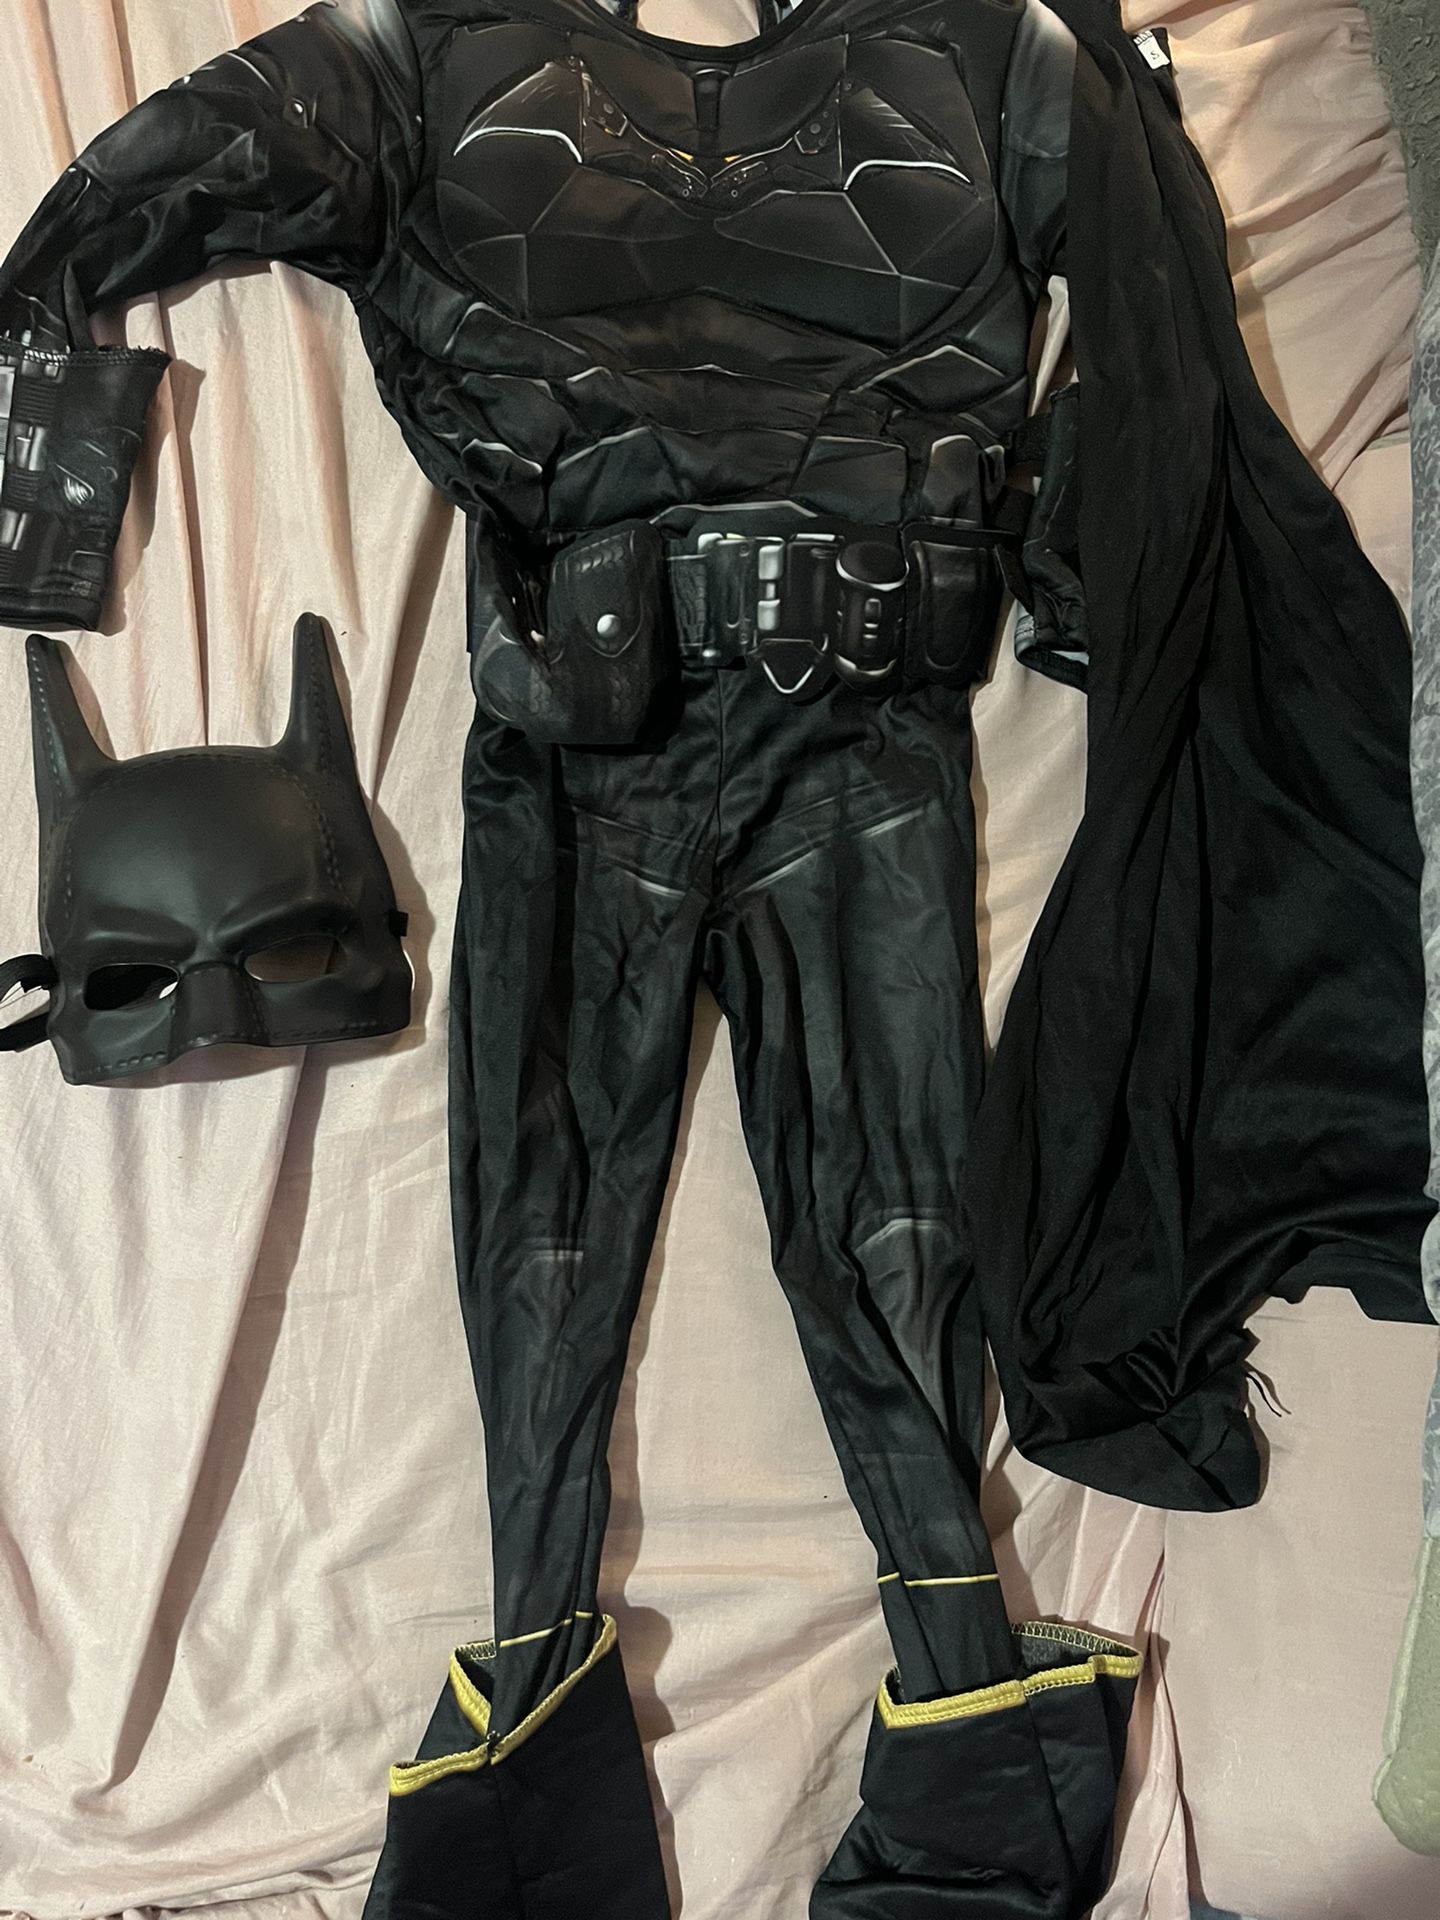 Batman Costume 